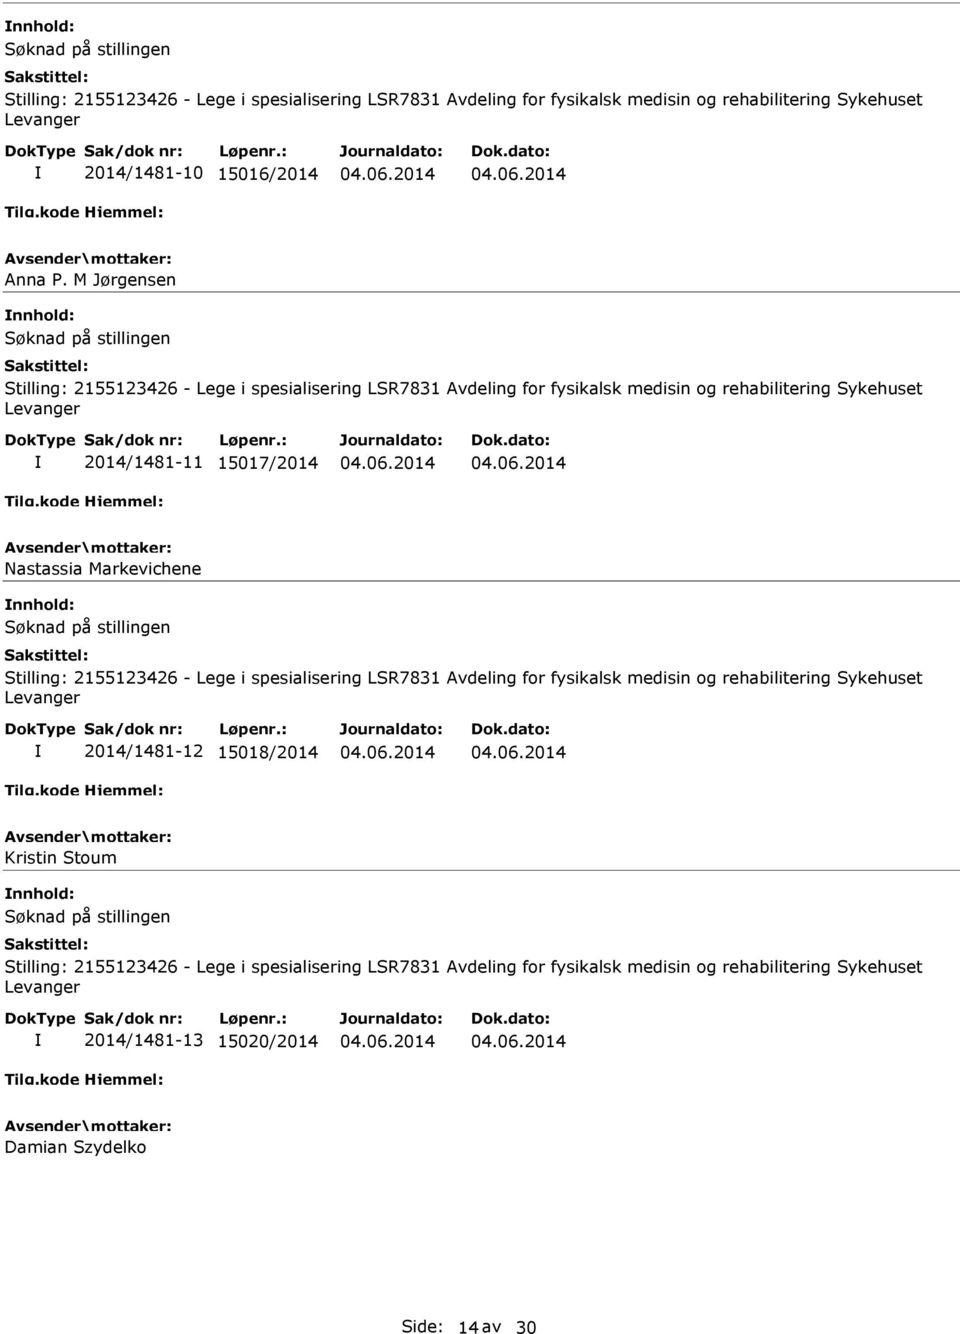 Markevichene Søknad på stillingen Stilling: 2155123426 - Lege i spesialisering LSR7831 Avdeling for fysikalsk medisin og rehabilitering Sykehuset Levanger 2014/1481-12 15018/2014 Kristin